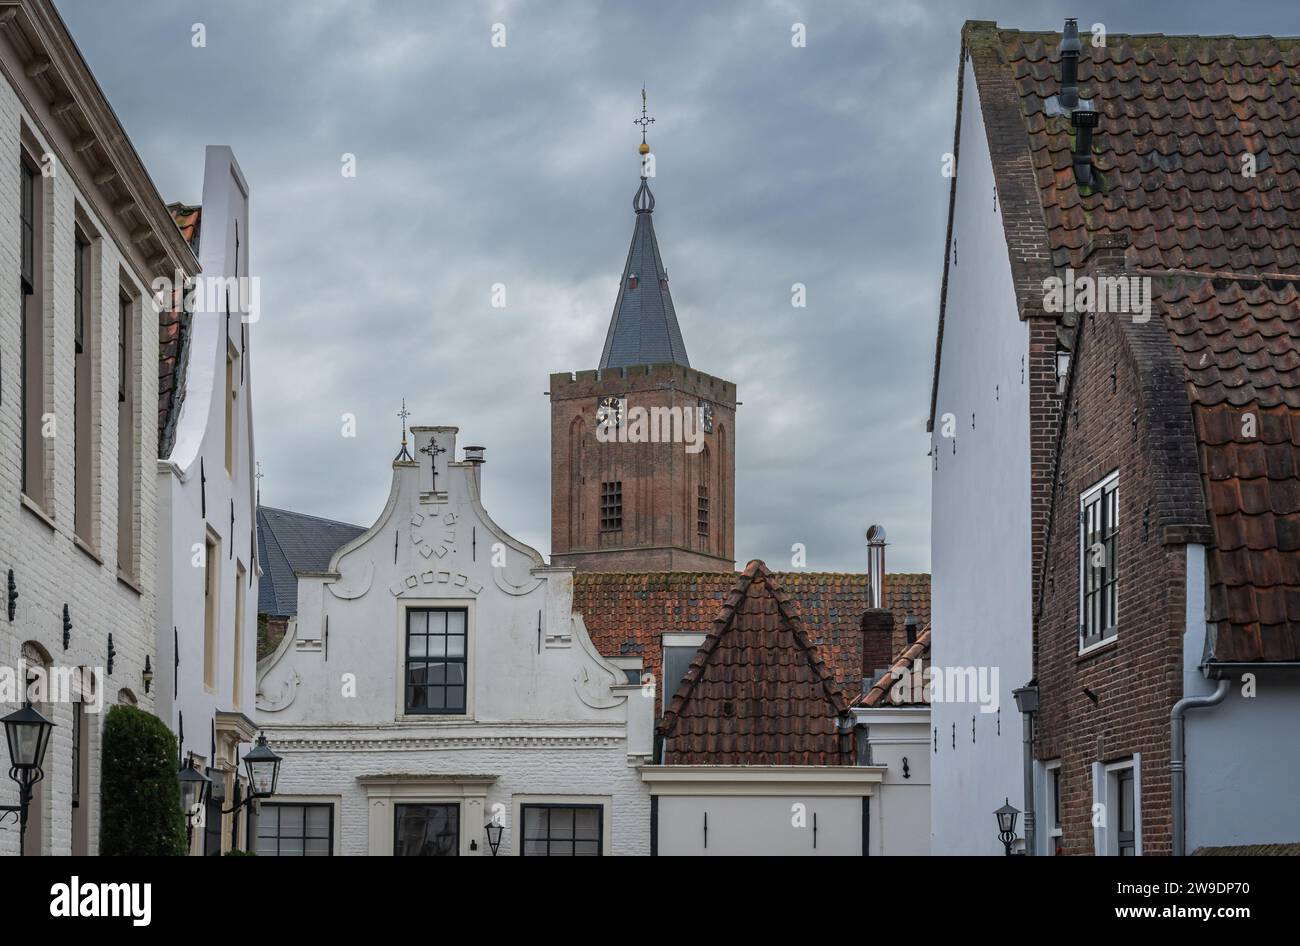 Cityscape of Naarden, Gooi region, The Netherlands Stock Photo